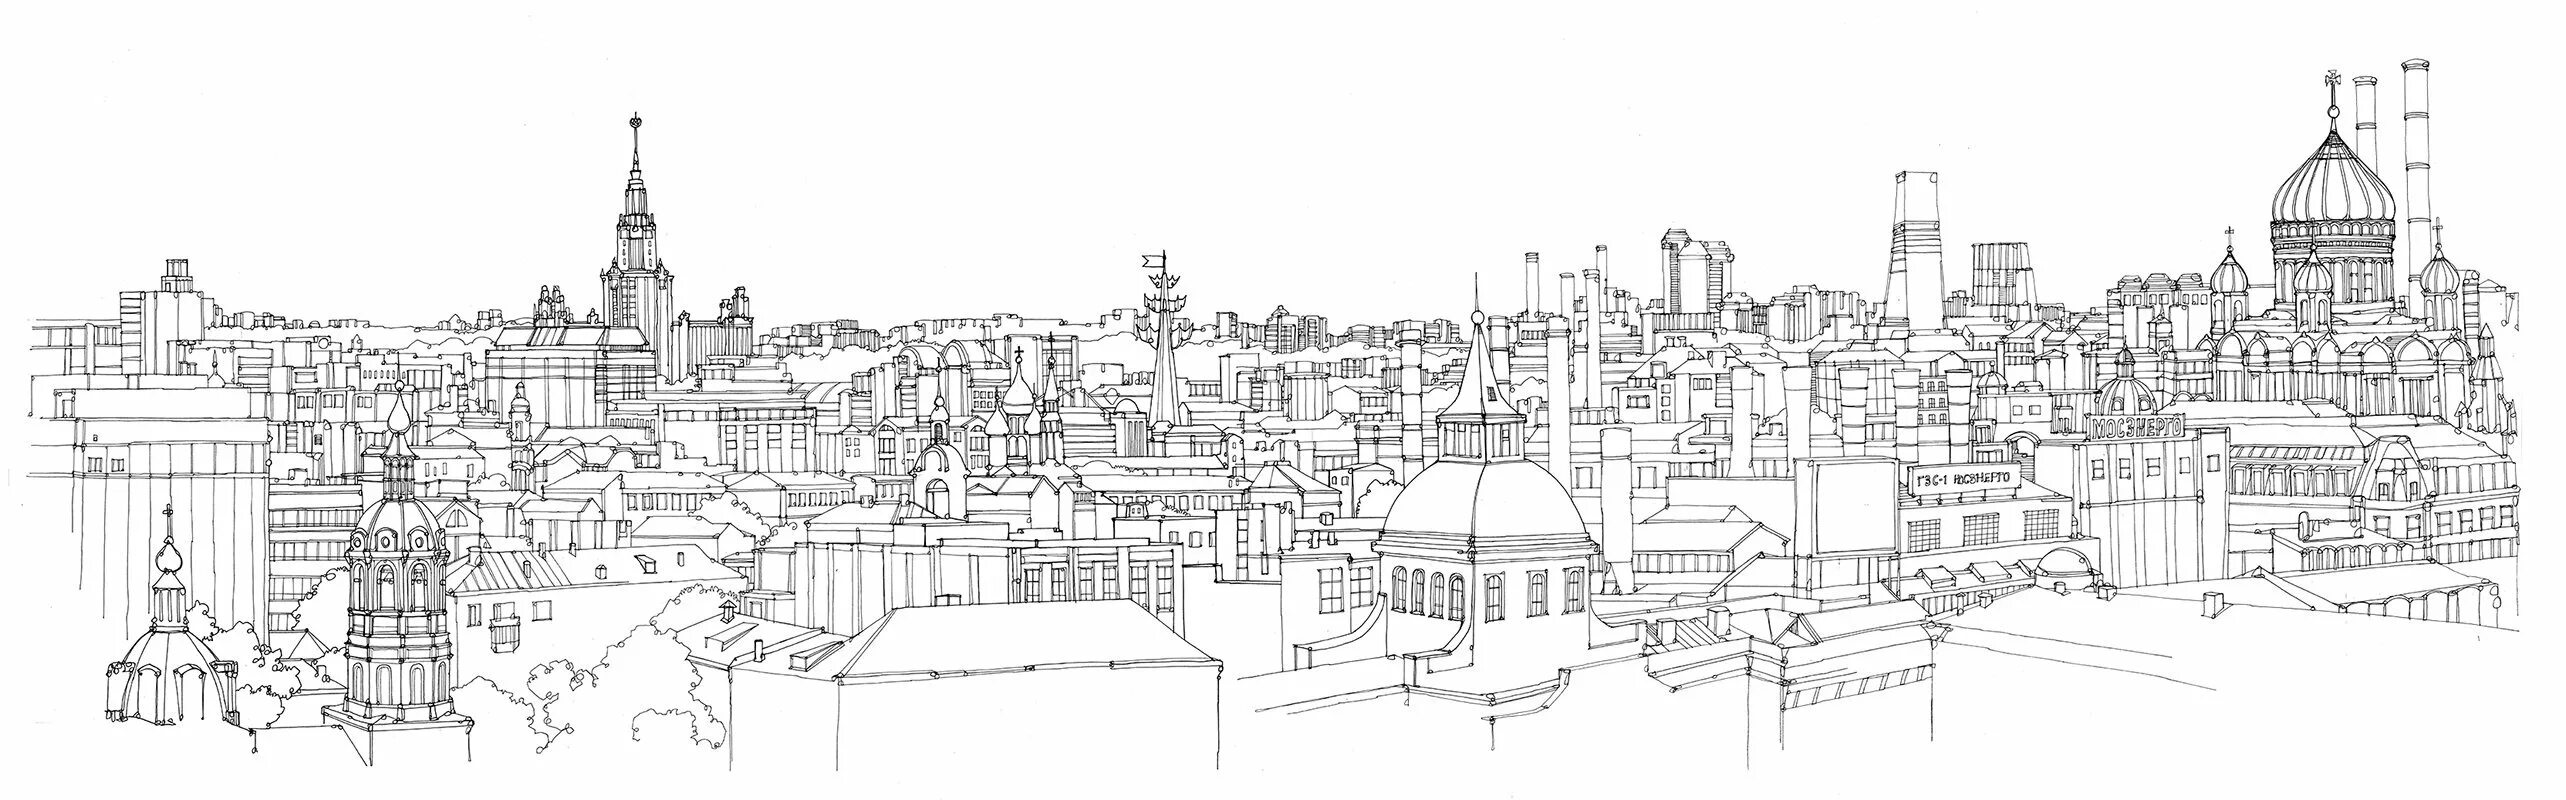 Контурное изображение города. Контур старого города. Панорама города в графике. Эскиз города.